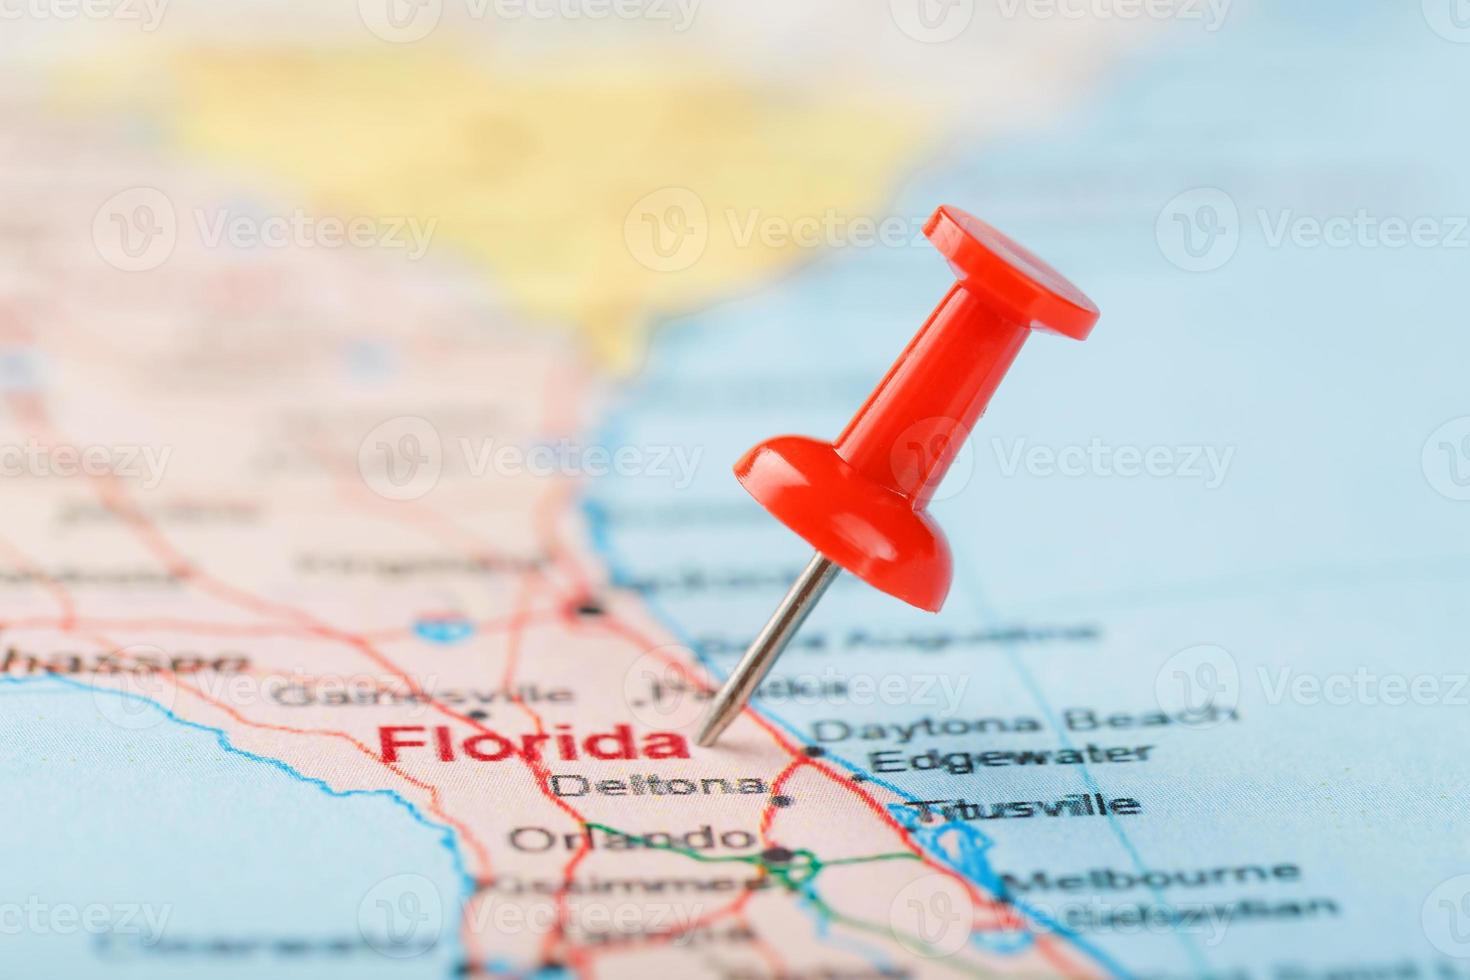 aiguille de bureau rouge sur une carte des états-unis, de la floride du sud et de la capitale tallahassee. gros plan du sud de la floride avec tack rouge photo